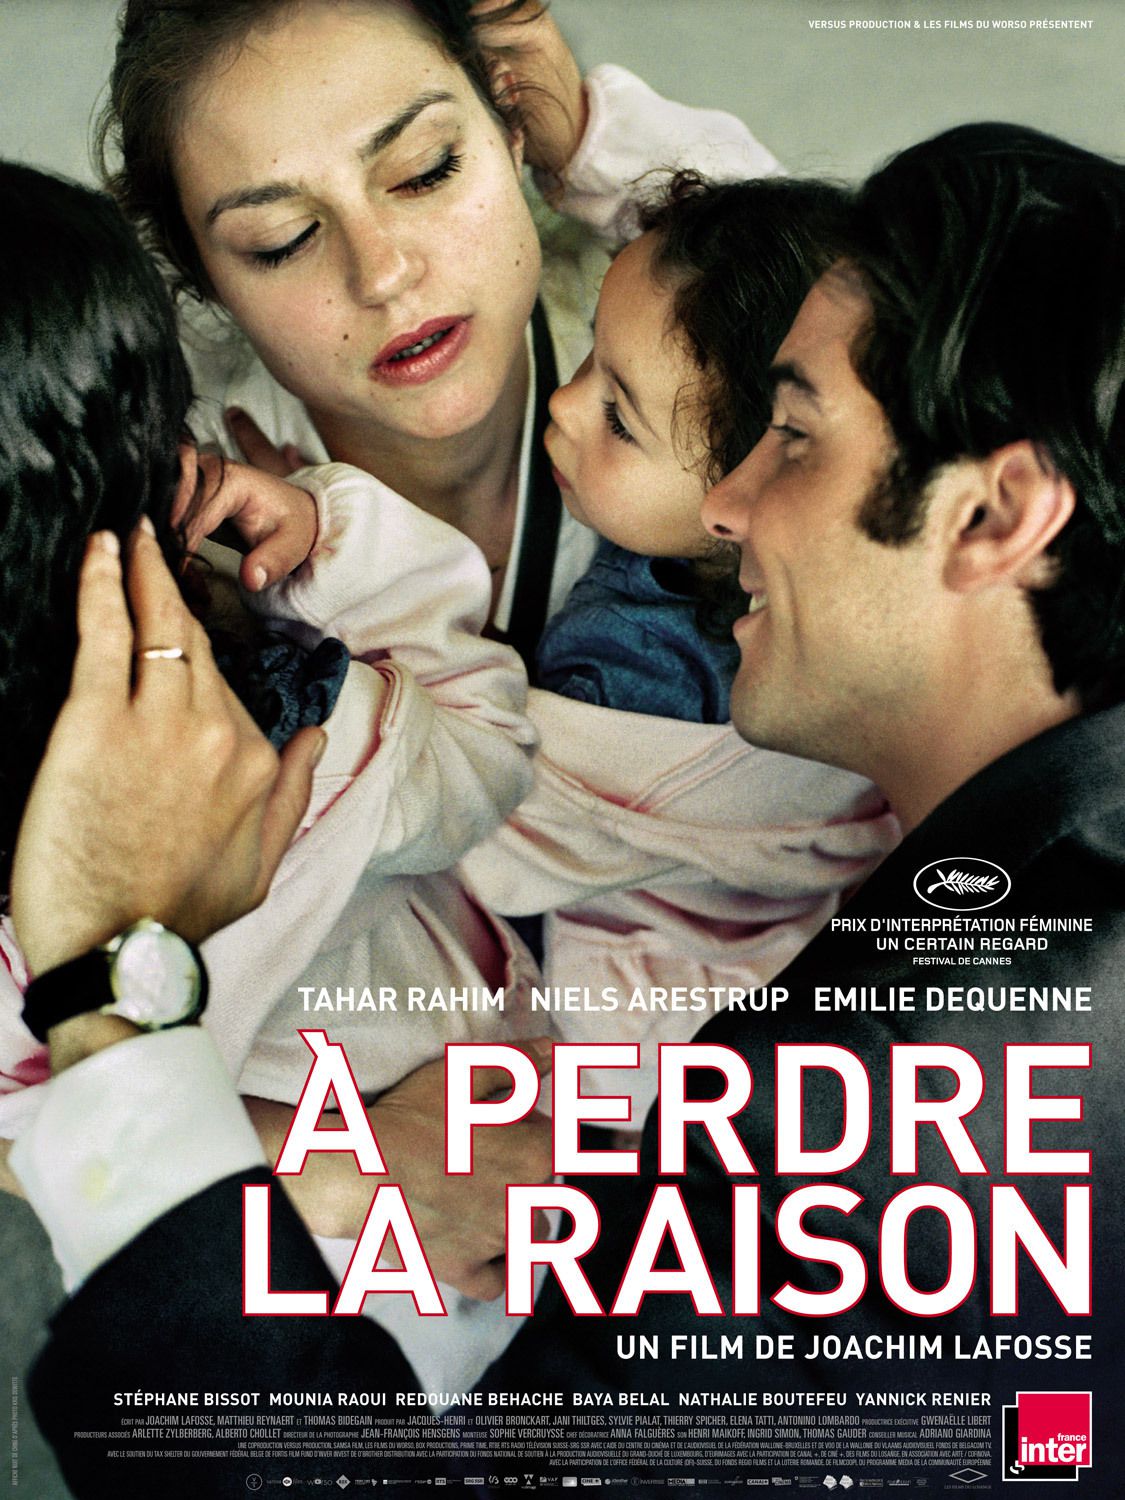 À perdre la raison - Film (2012) streaming VF gratuit complet